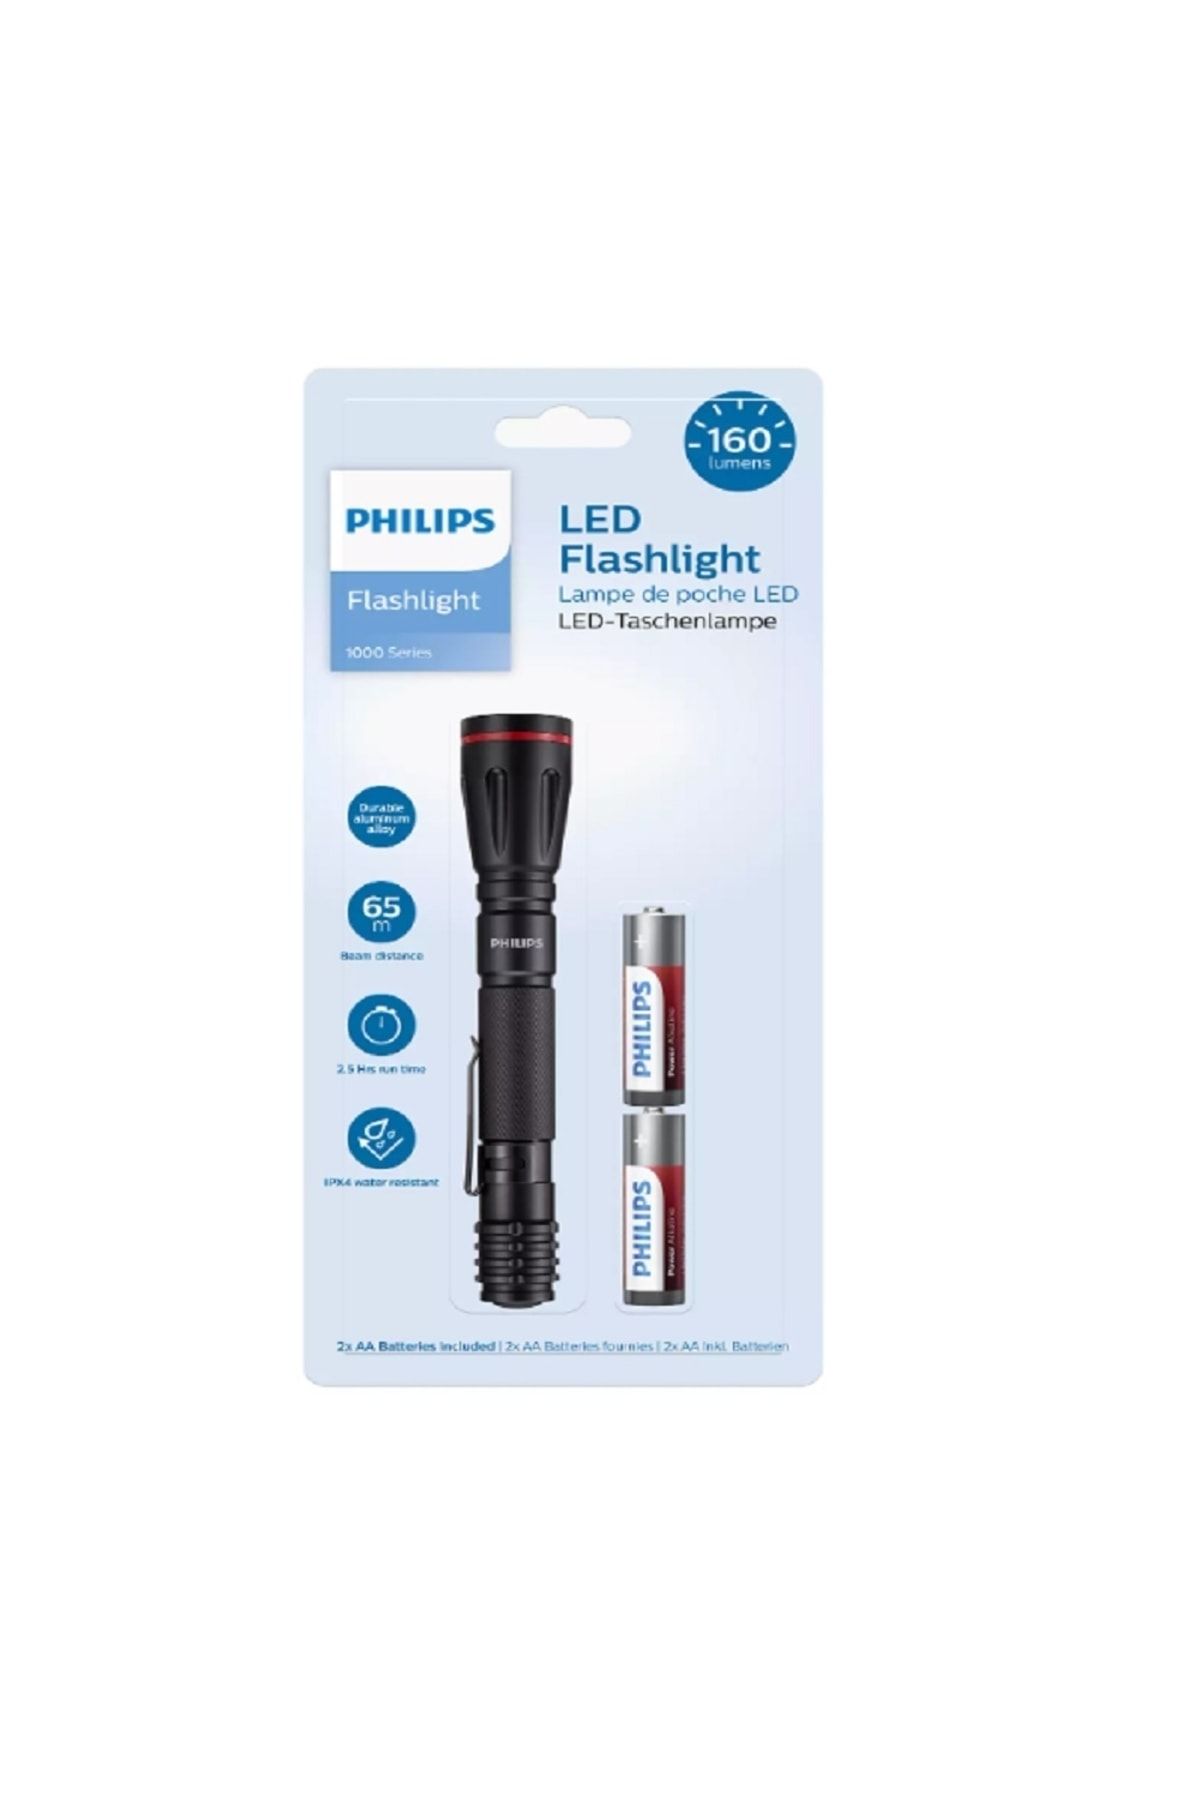 Philips Sfl1001p/10 Flashlıgt Led 2xaa Batteries El Feneri